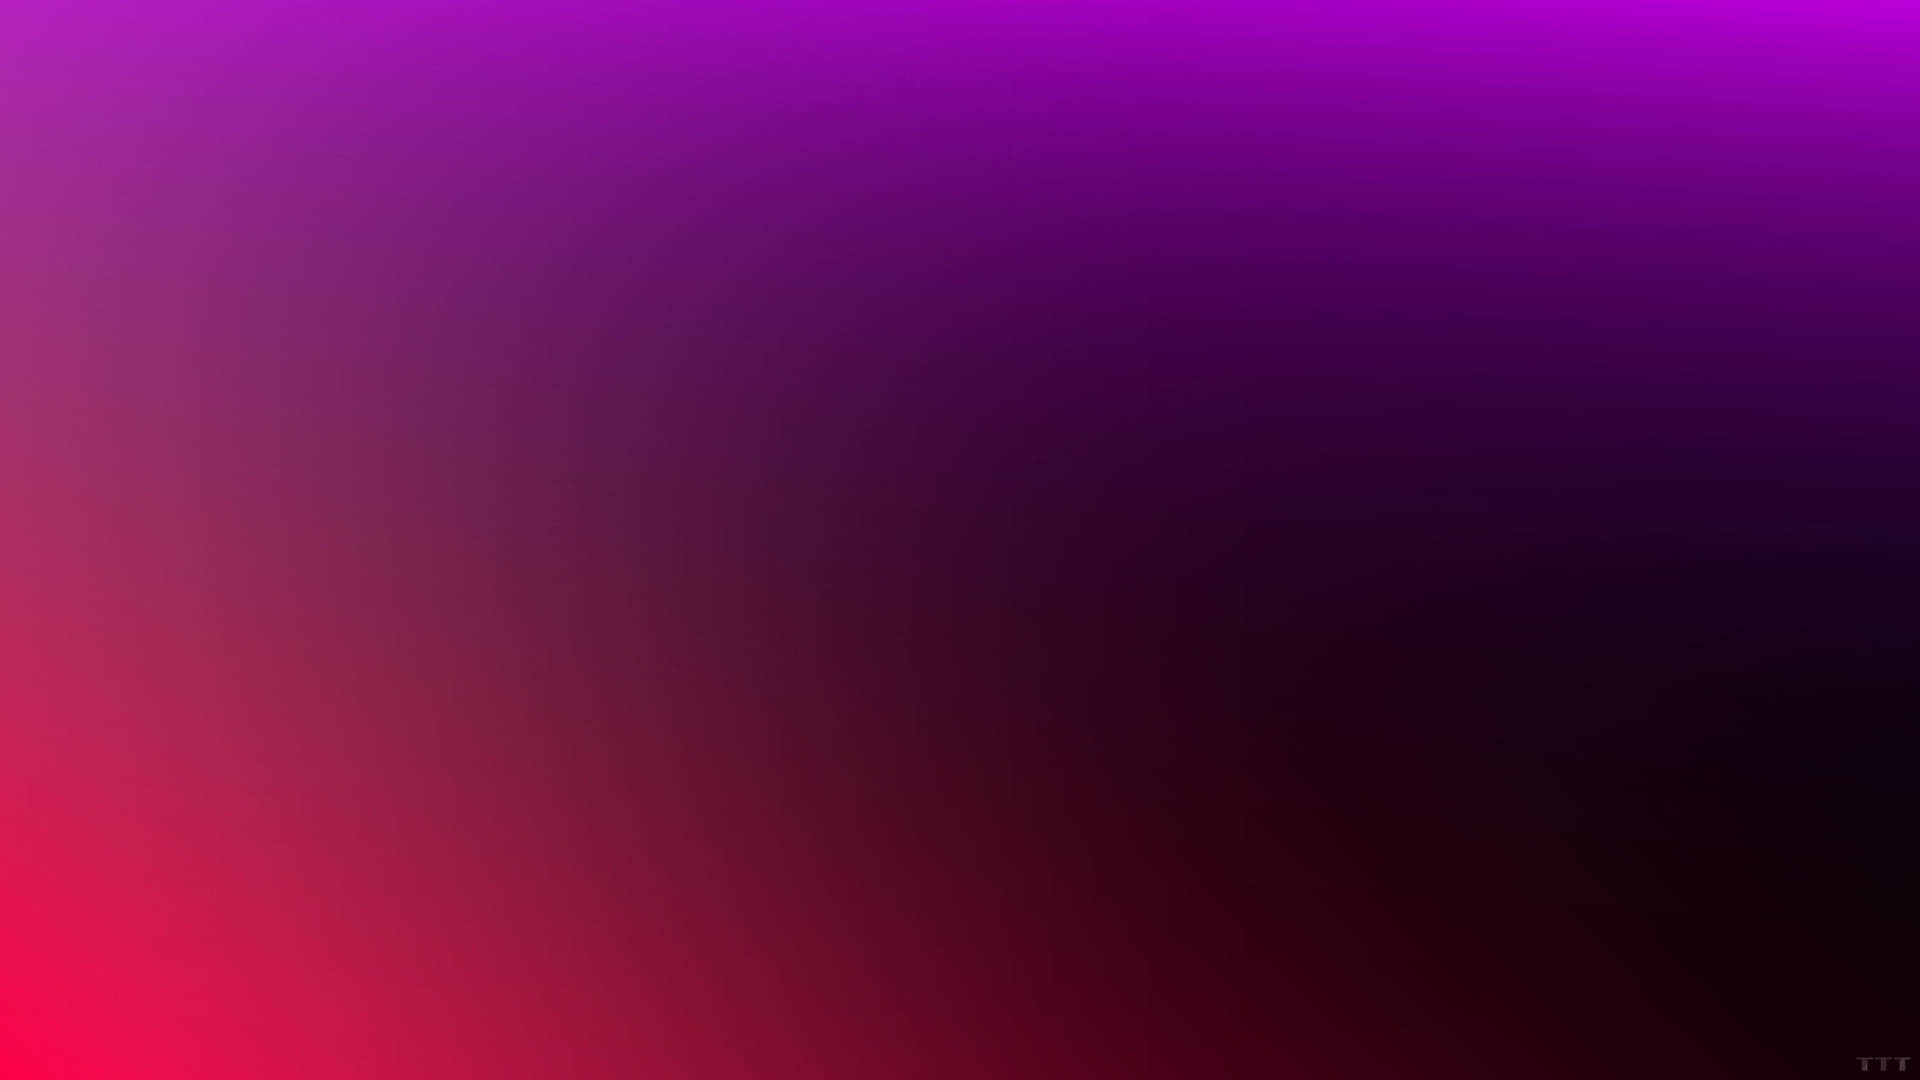 Minimalist Red Violet Gradient Background